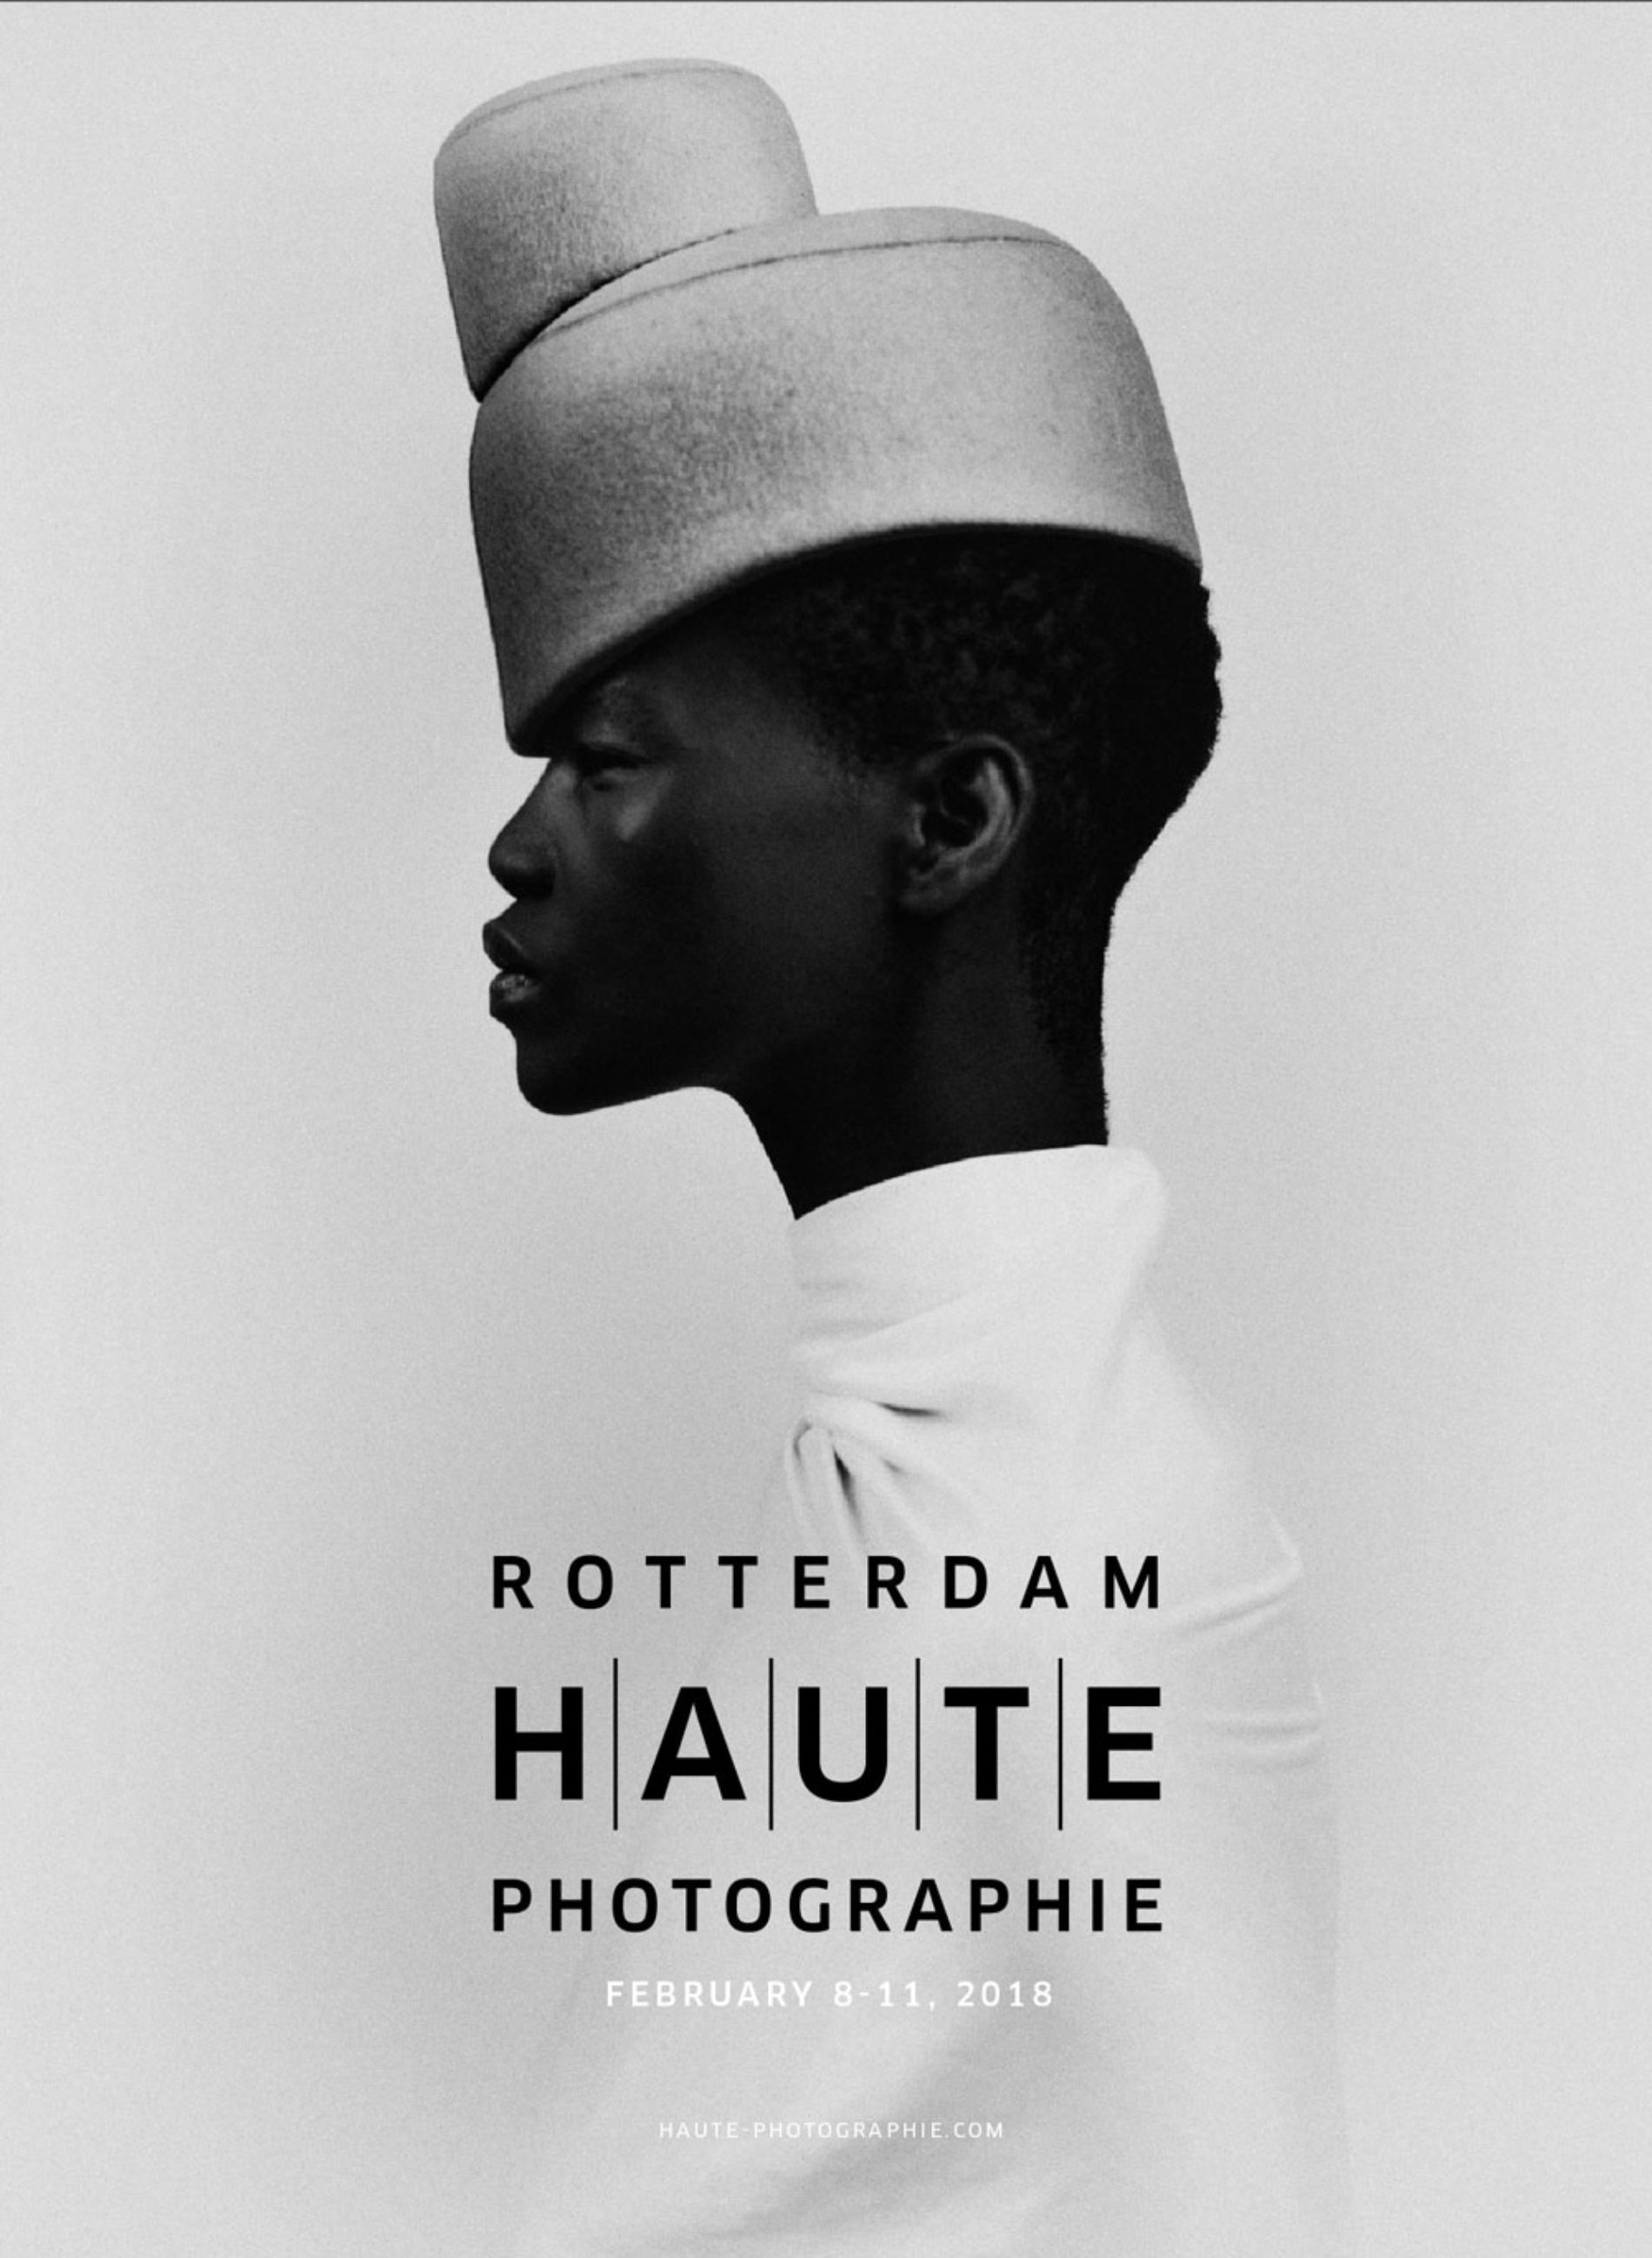 Haute Photographie Art Rotterdam Week 8 – 11 February 2018